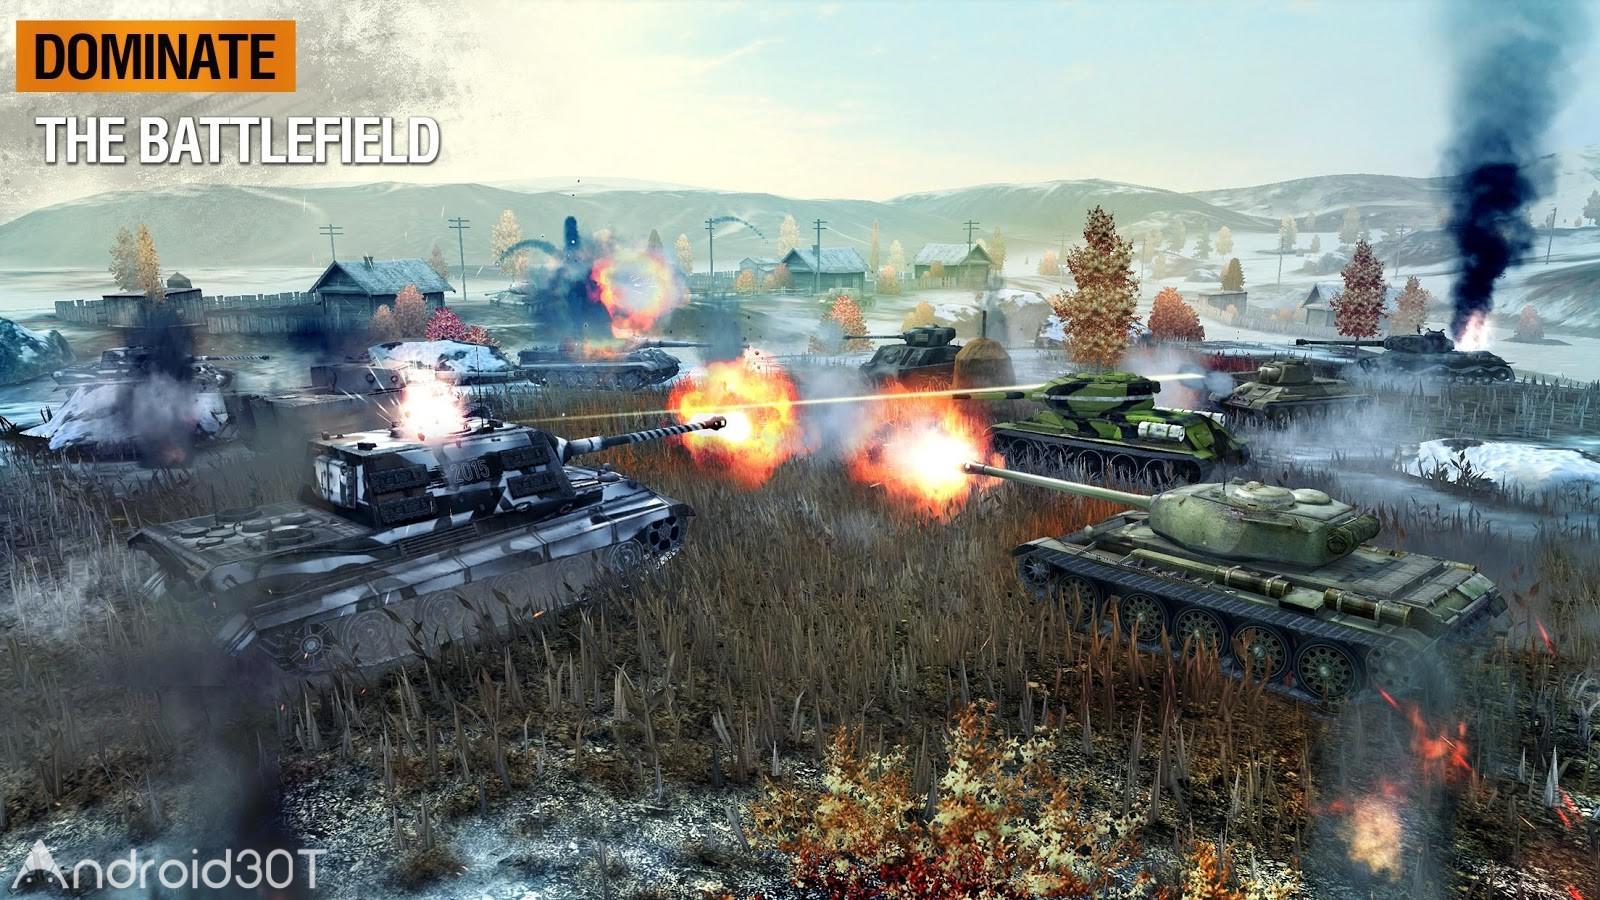 دانلود World of Tanks Blitz 9.8.0.690 – دانلود بازی جهان نبرد تانک ها اندروید